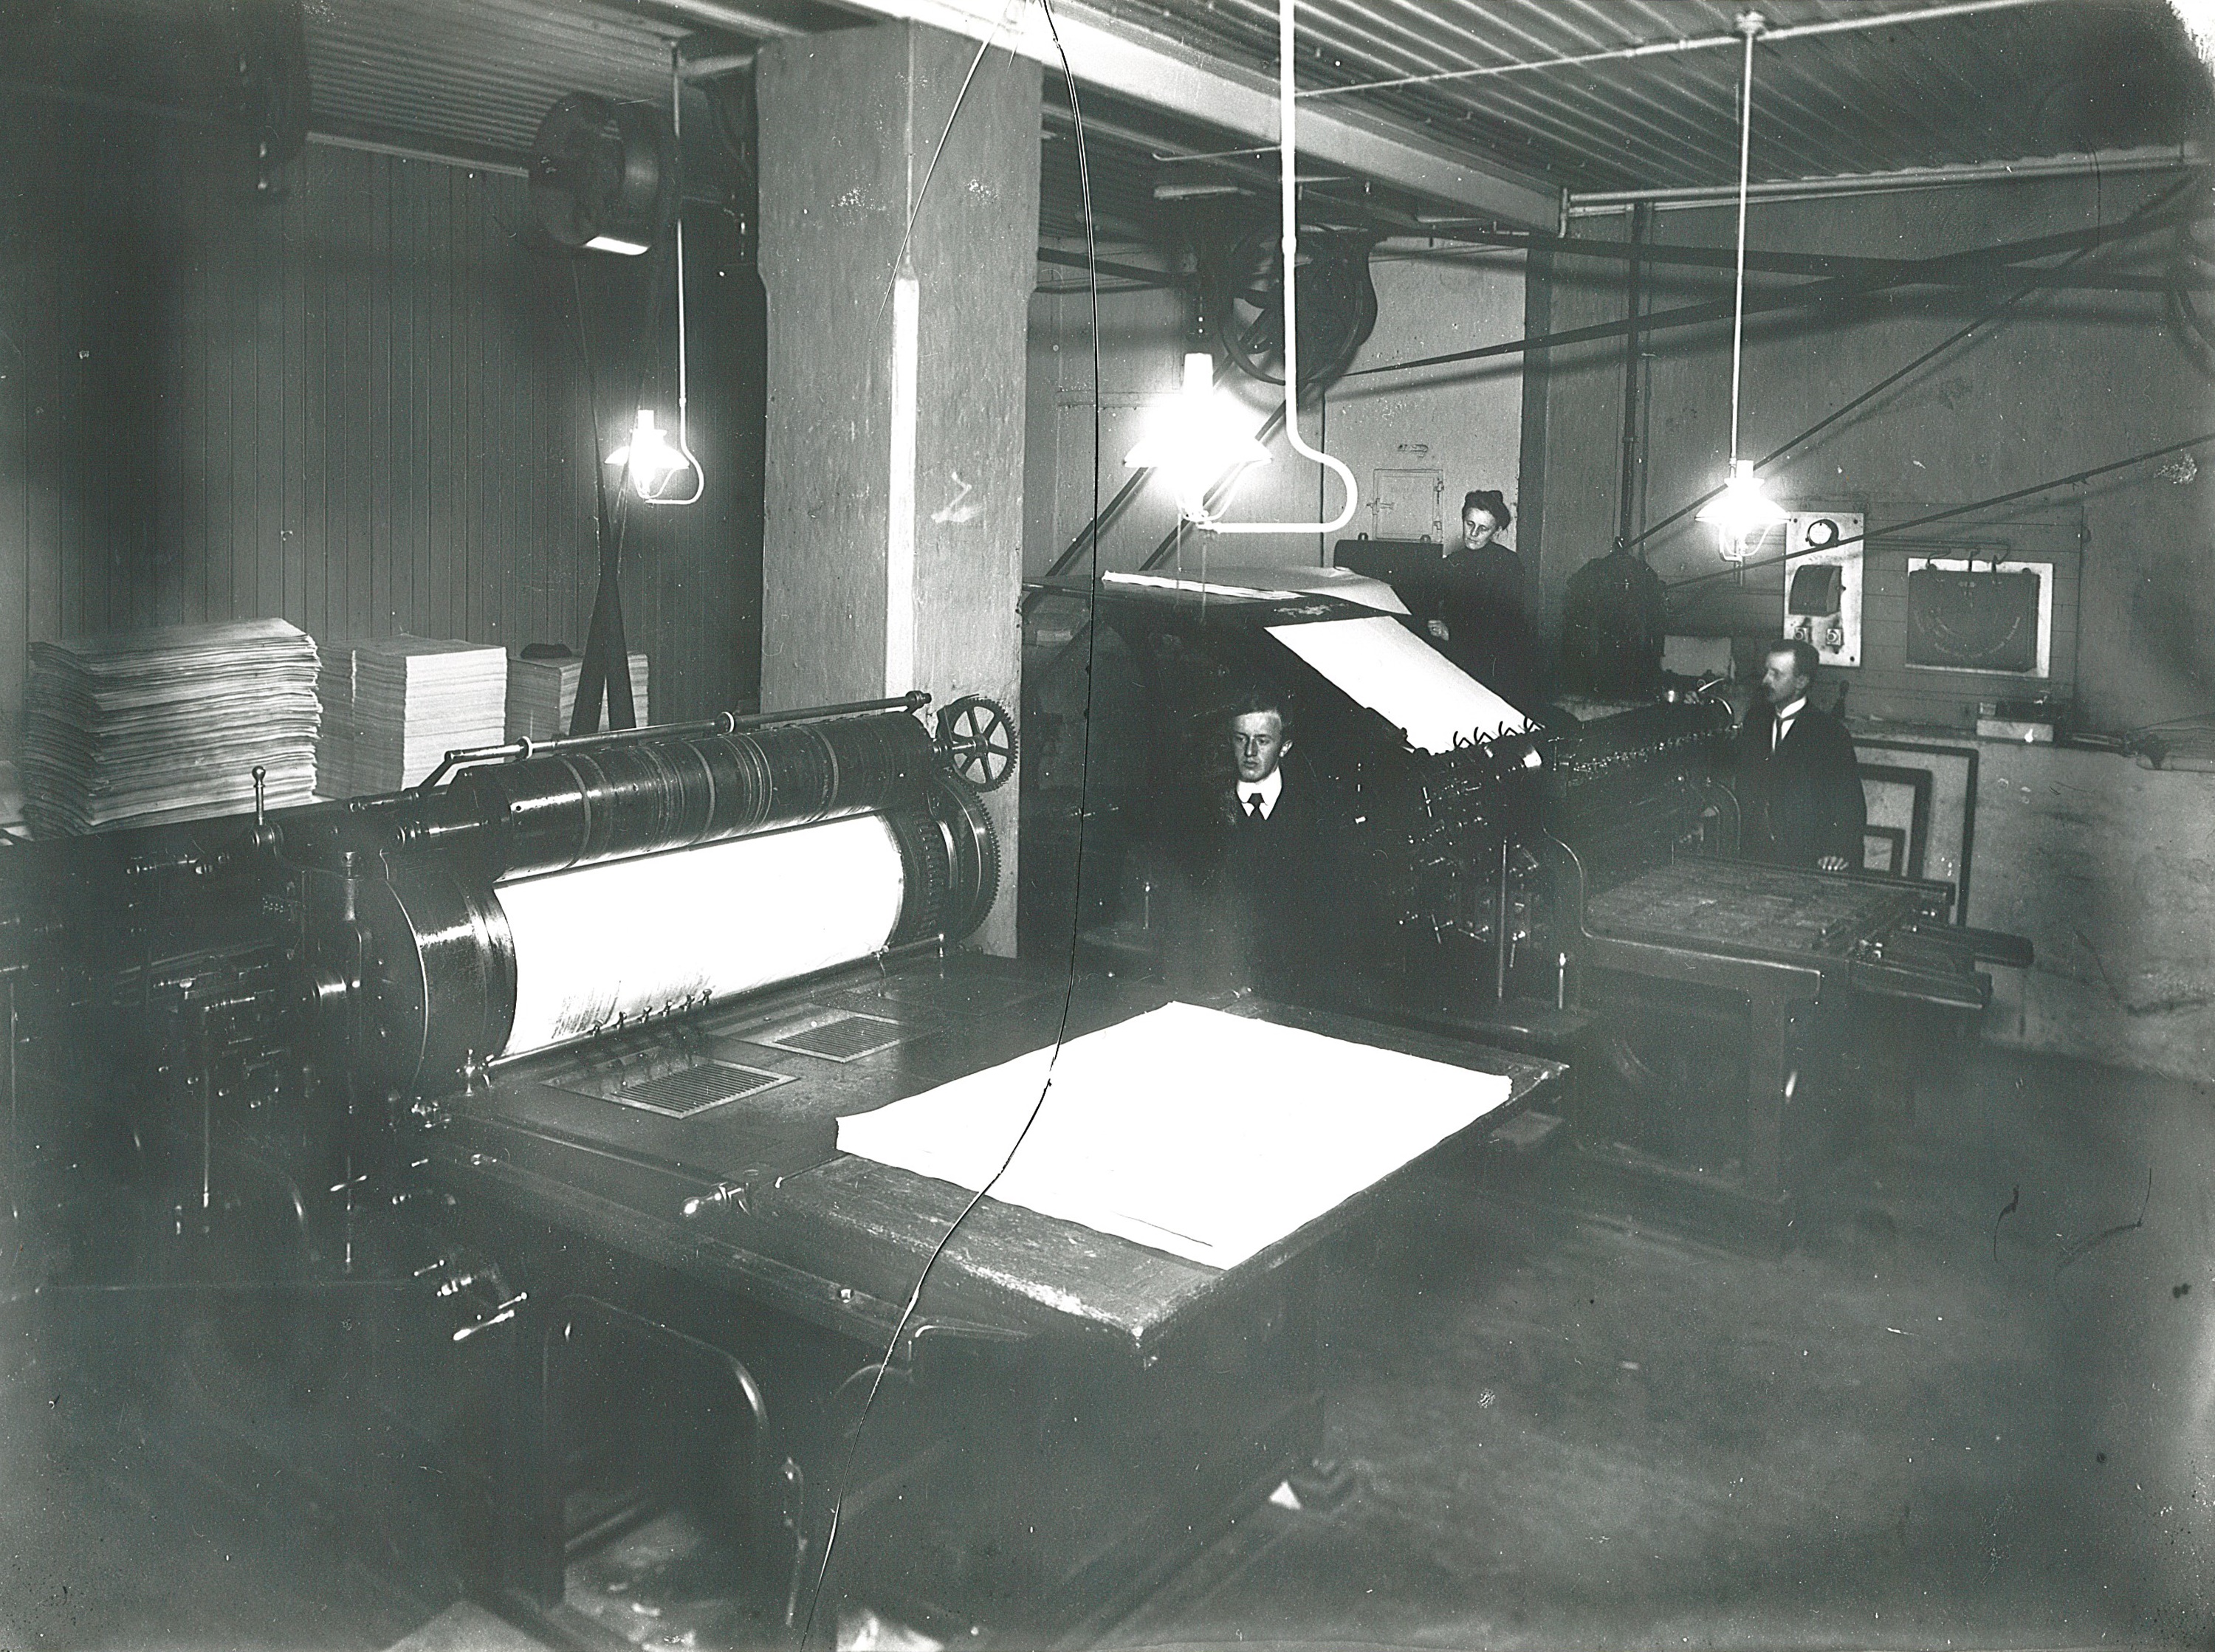 Trykkarka ble ført rundt med sylinderen og pressa mot trykkforma som var innsatt med farge. Her ser vi trykker og påleggerske ved Sundhedsbladets boktrykkeri i Akersgata 74 i 1908.